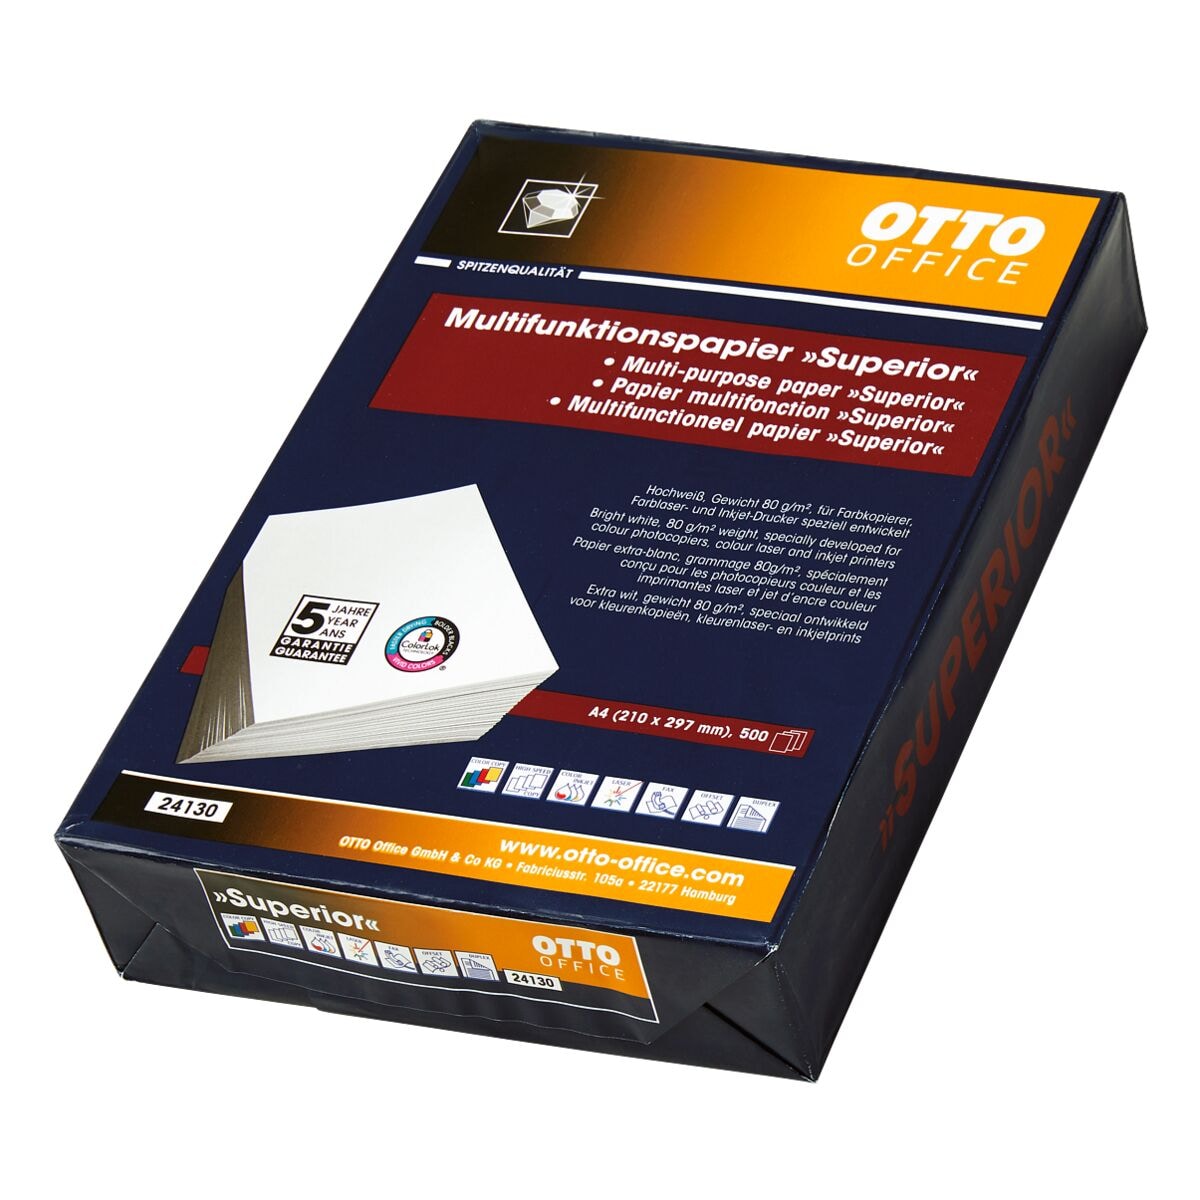 Multifunktionales Druckerpapier A4 OTTO Office Premium Superior - 500 Blatt gesamt, 80g/qm